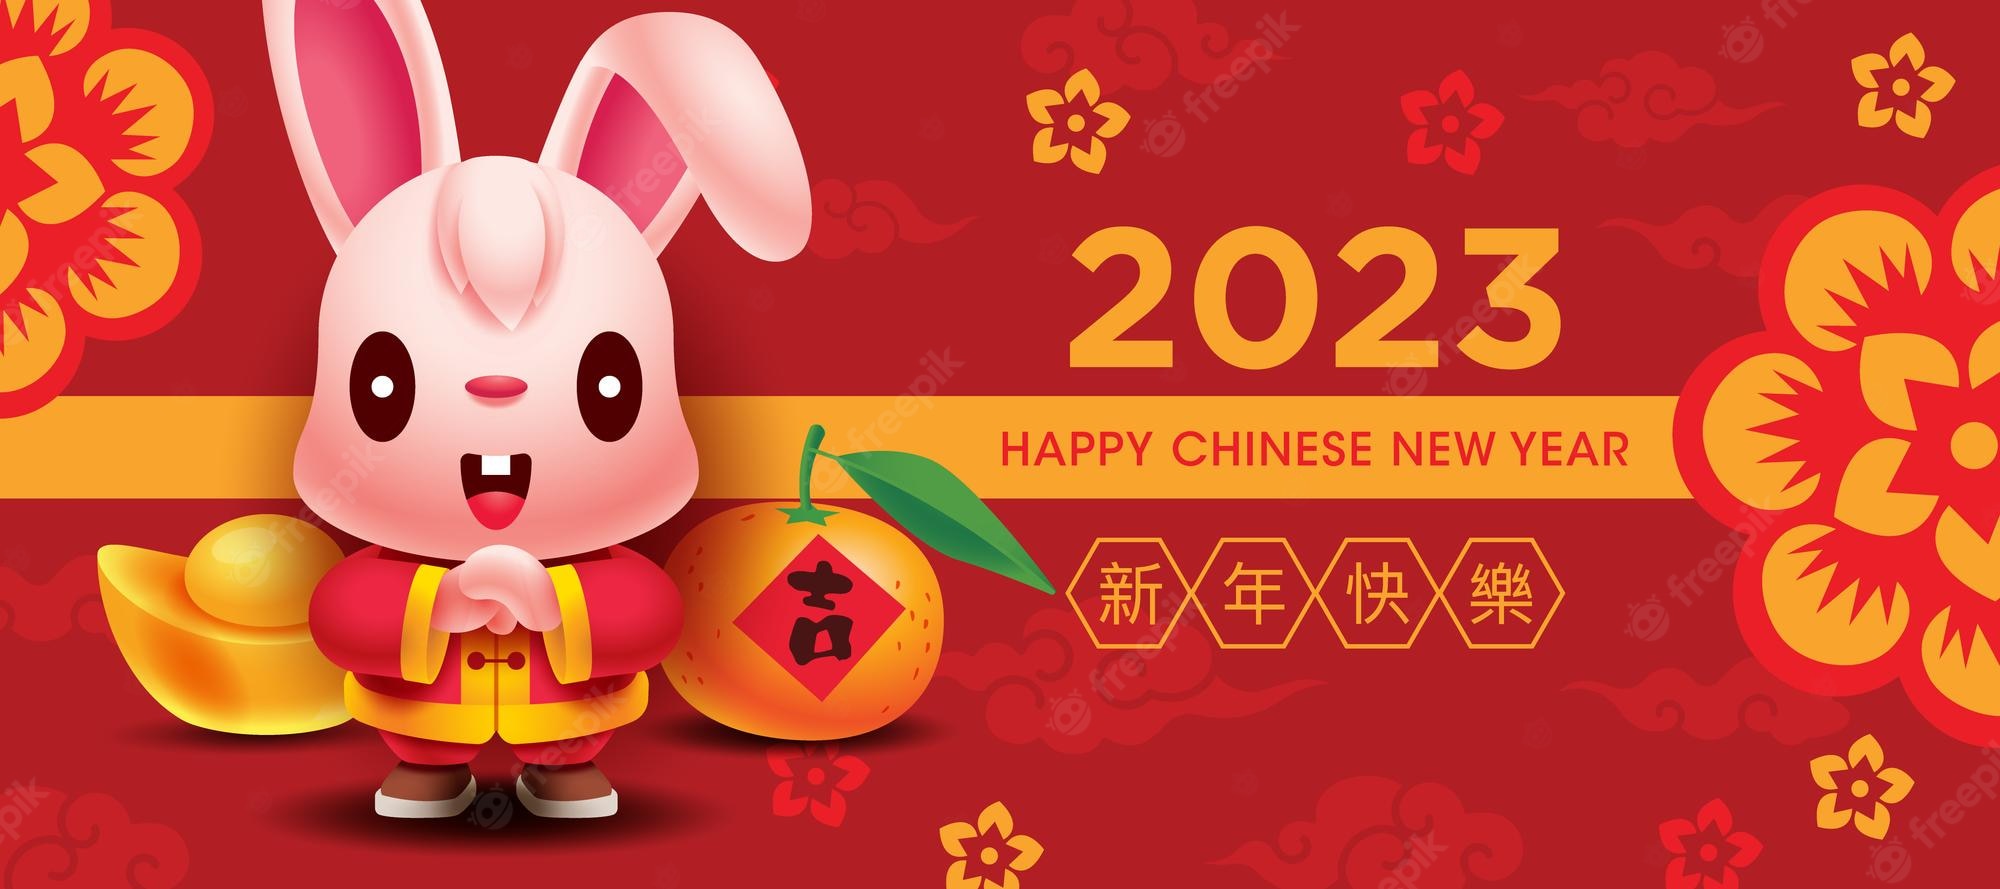 2023-ano-novo-chinês-fofo-coelho-saudação-banner-com-ouro-mandarim-laranja-fundo-vermelho_438266-587